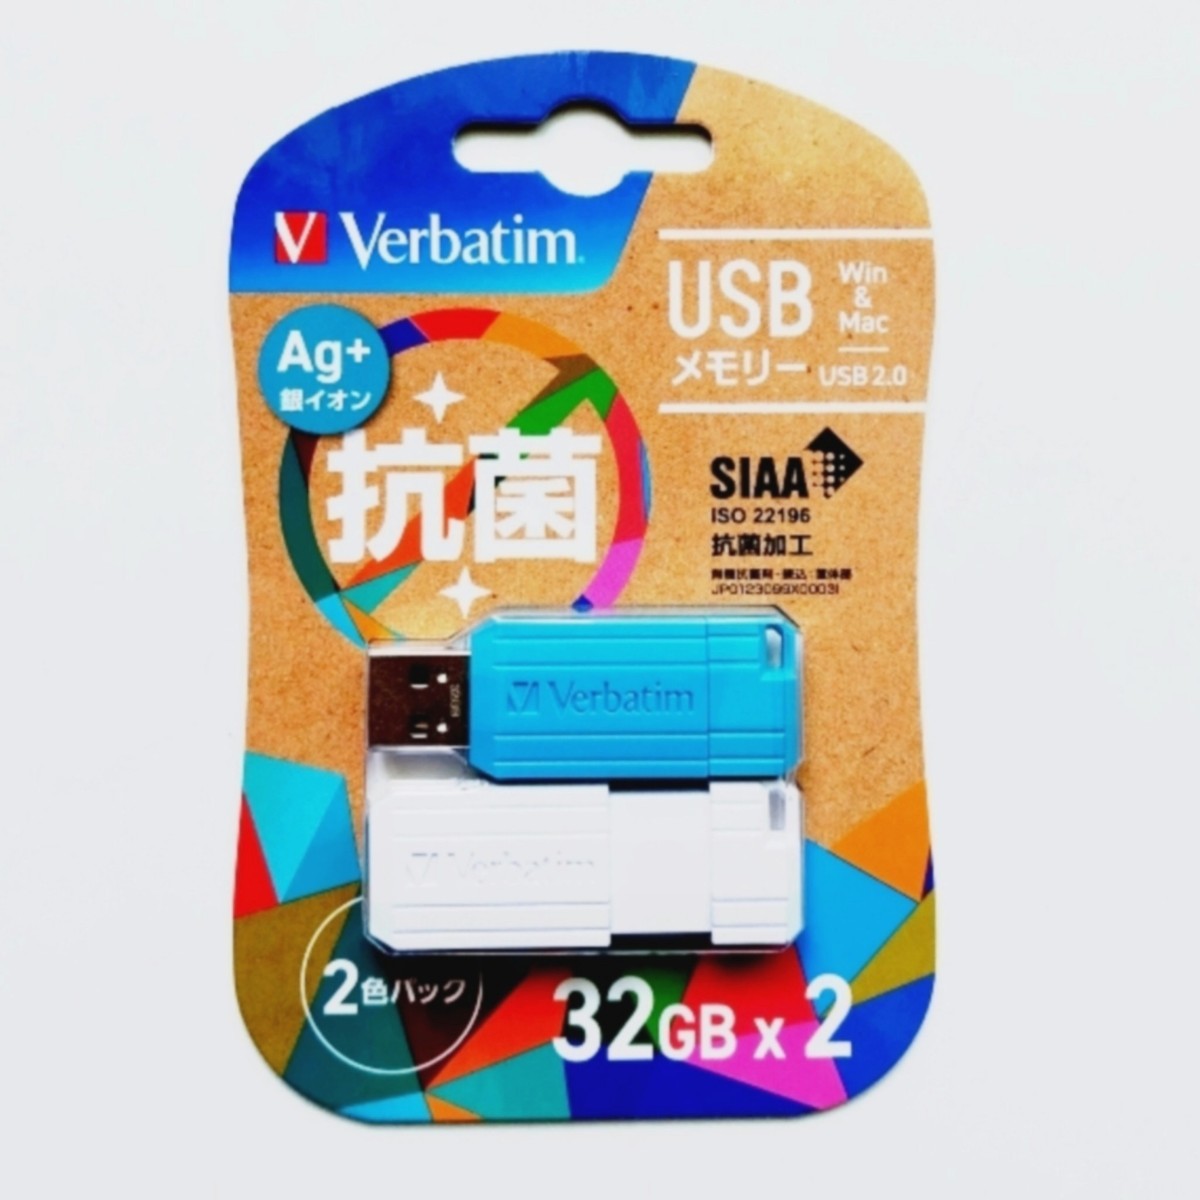 スライド式USB2.0メモリー32GB 2色パック(Verbatim )KUSBNP32GMX2V1 二個セット【1円スタート出品・新品・送料無料】_画像2